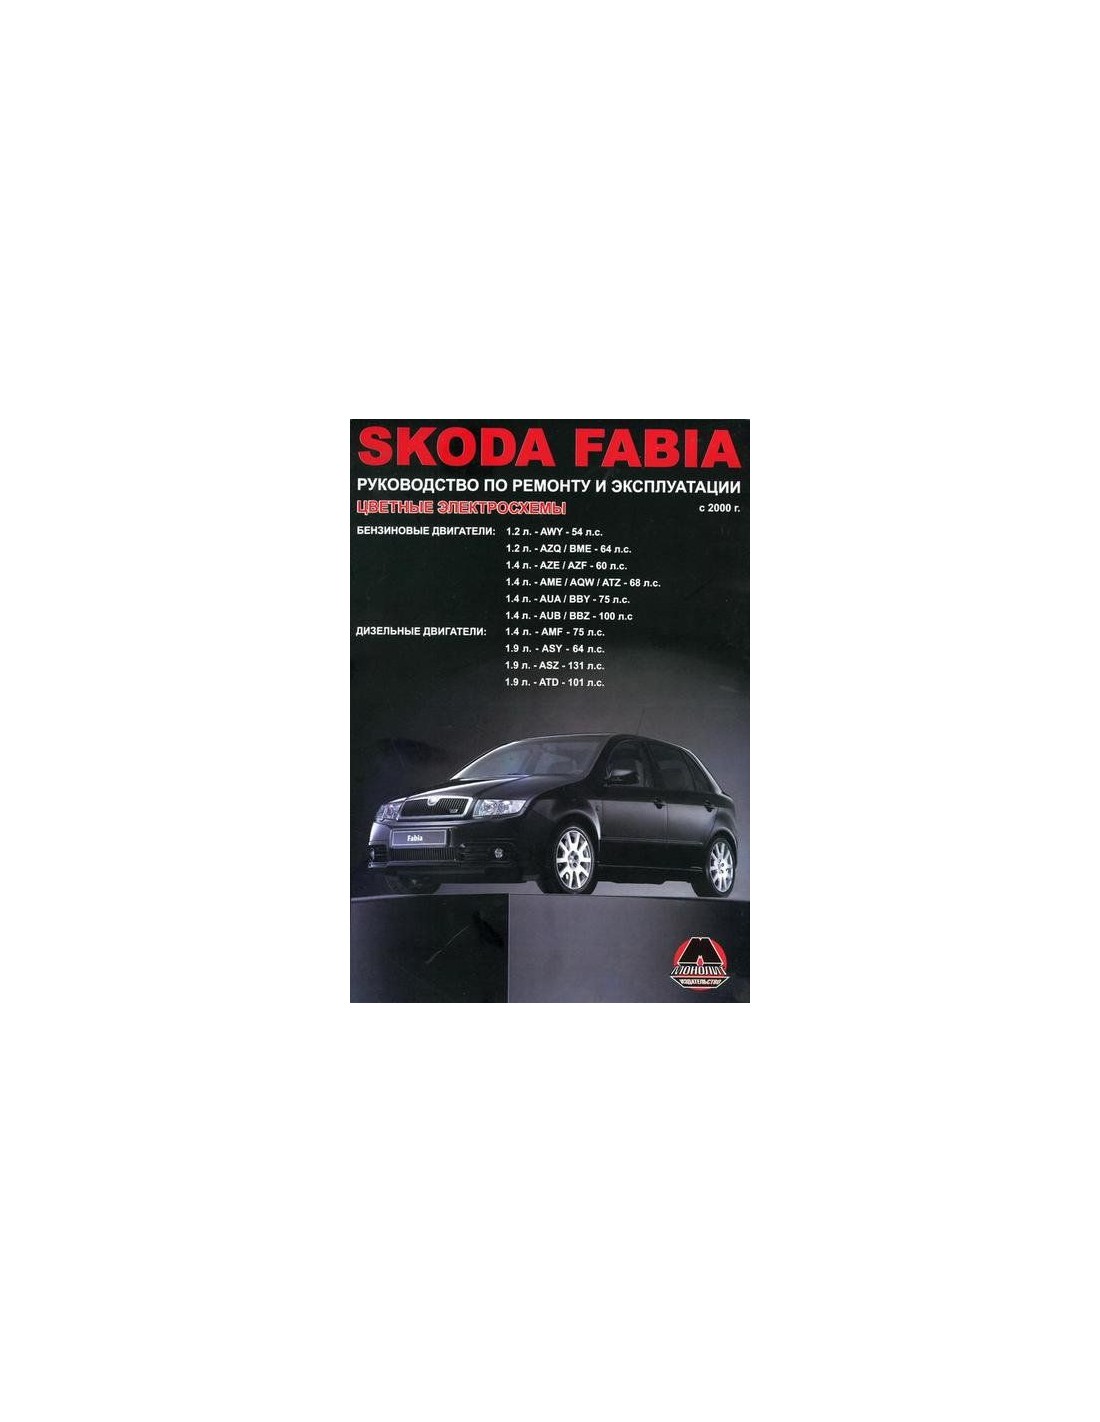 Книга Skoda Fabia руководство по ремонту с 2000 года Монолит